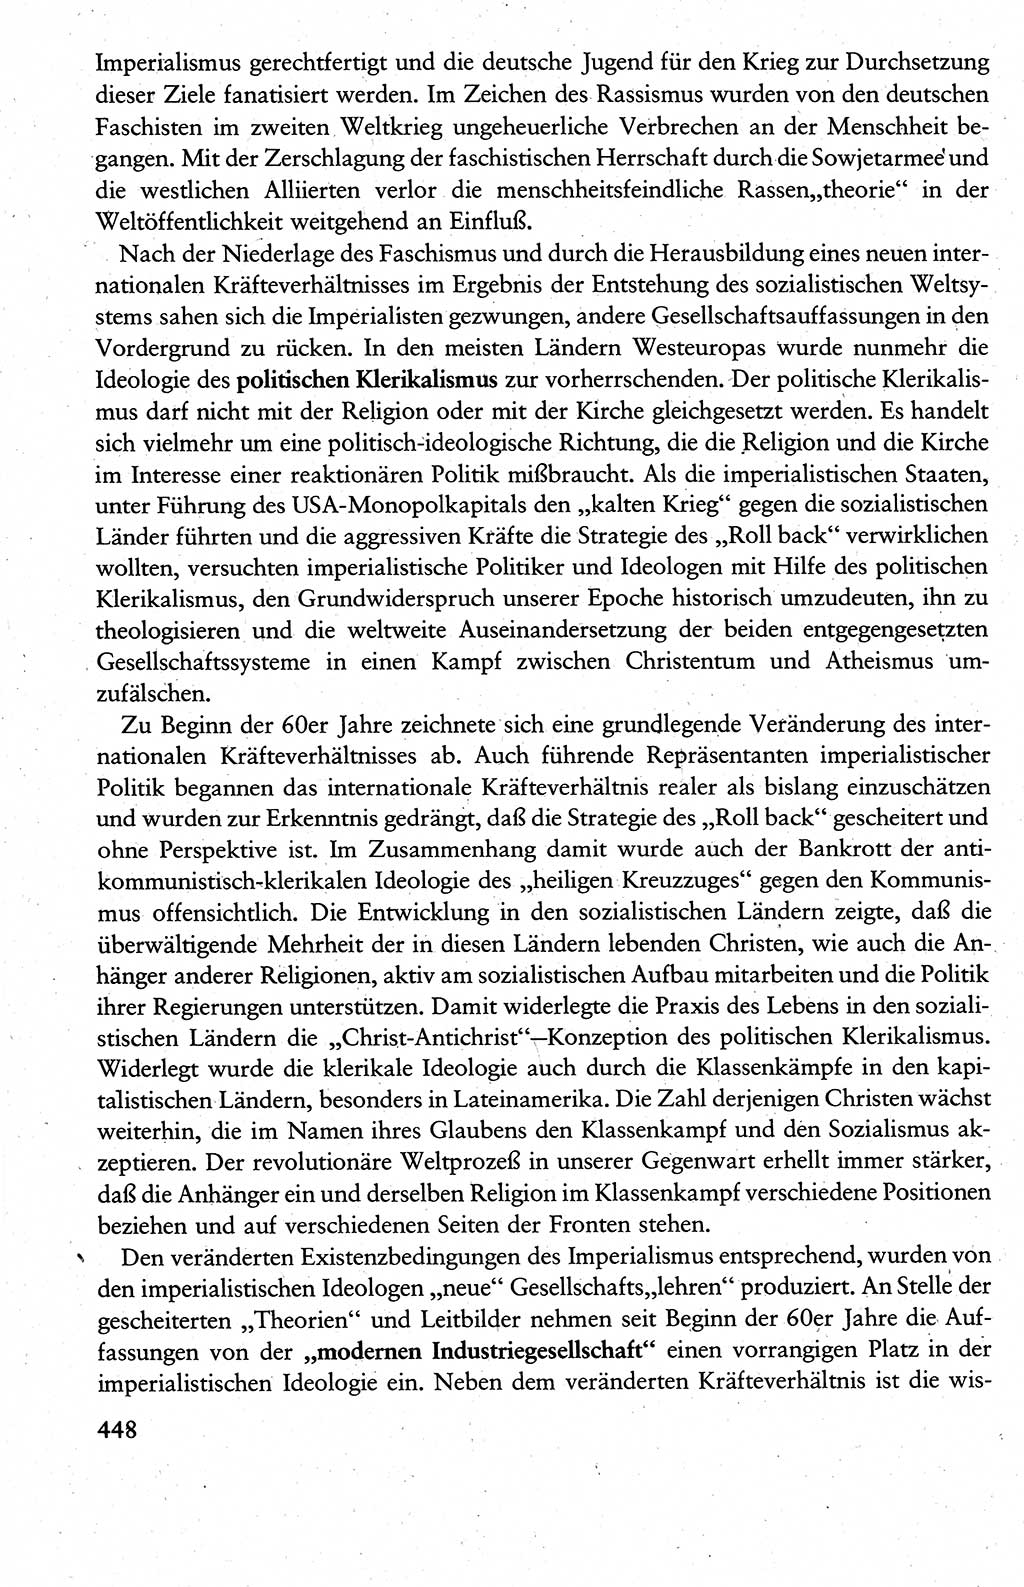 Wissenschaftlicher Kommunismus [Deutsche Demokratische Republik (DDR)], Lehrbuch für das marxistisch-leninistische Grundlagenstudium 1983, Seite 448 (Wiss. Komm. DDR Lb. 1983, S. 448)